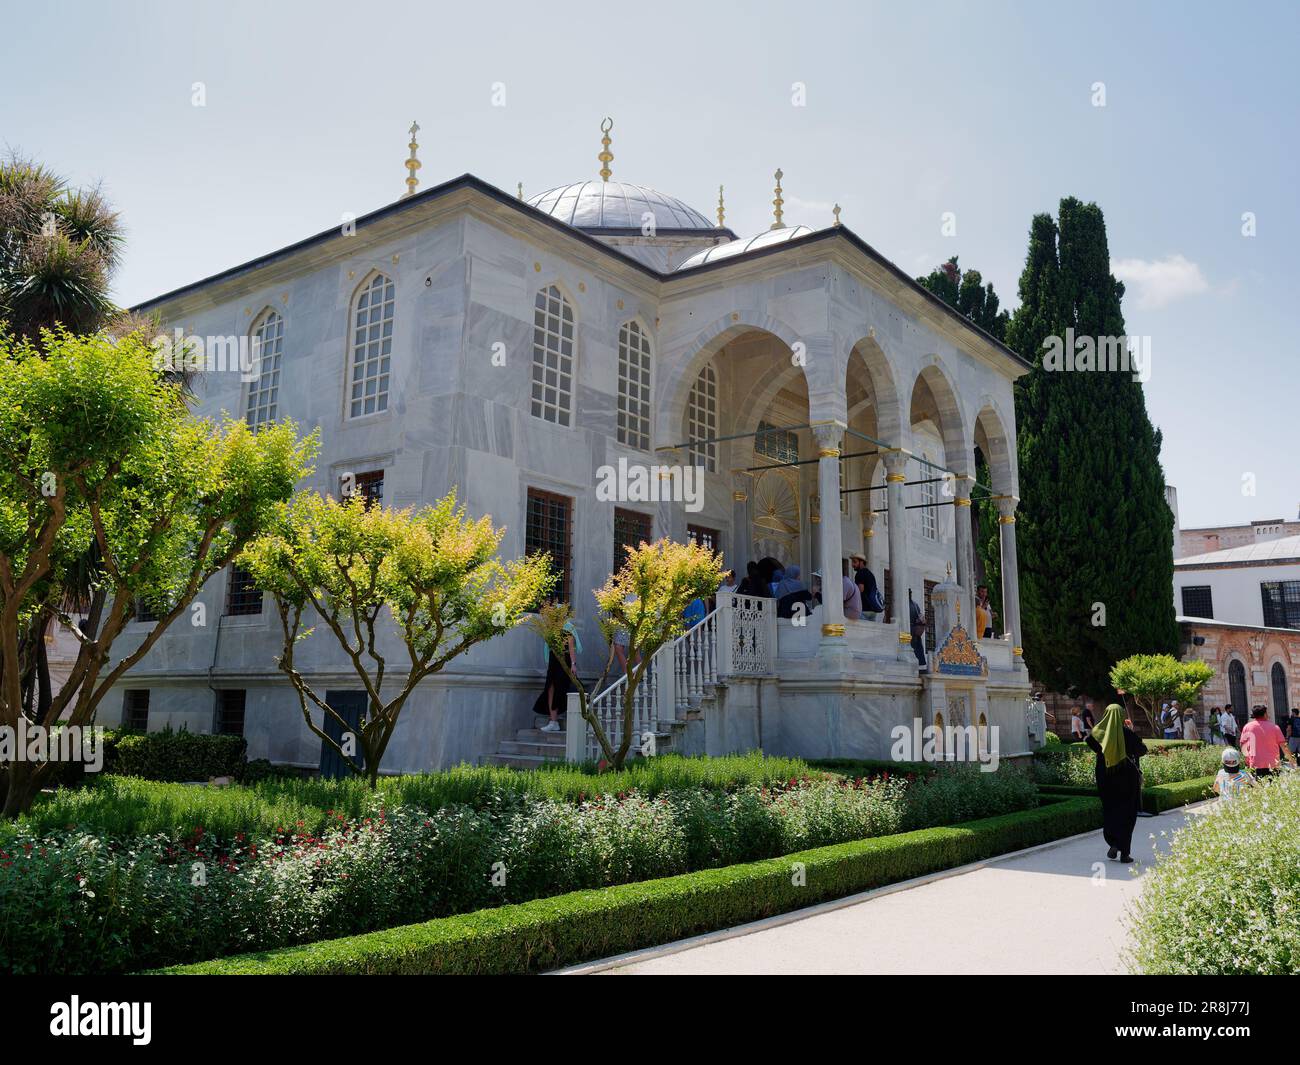 Außenansicht des Topkapi Palace Musuem Komplexes mit Gärten. Bezirk Fatih, Istanbul, Türkei. Die muslimische Dame geht an einem eleganten Gebäude mit Säulengang vorbei Stockfoto